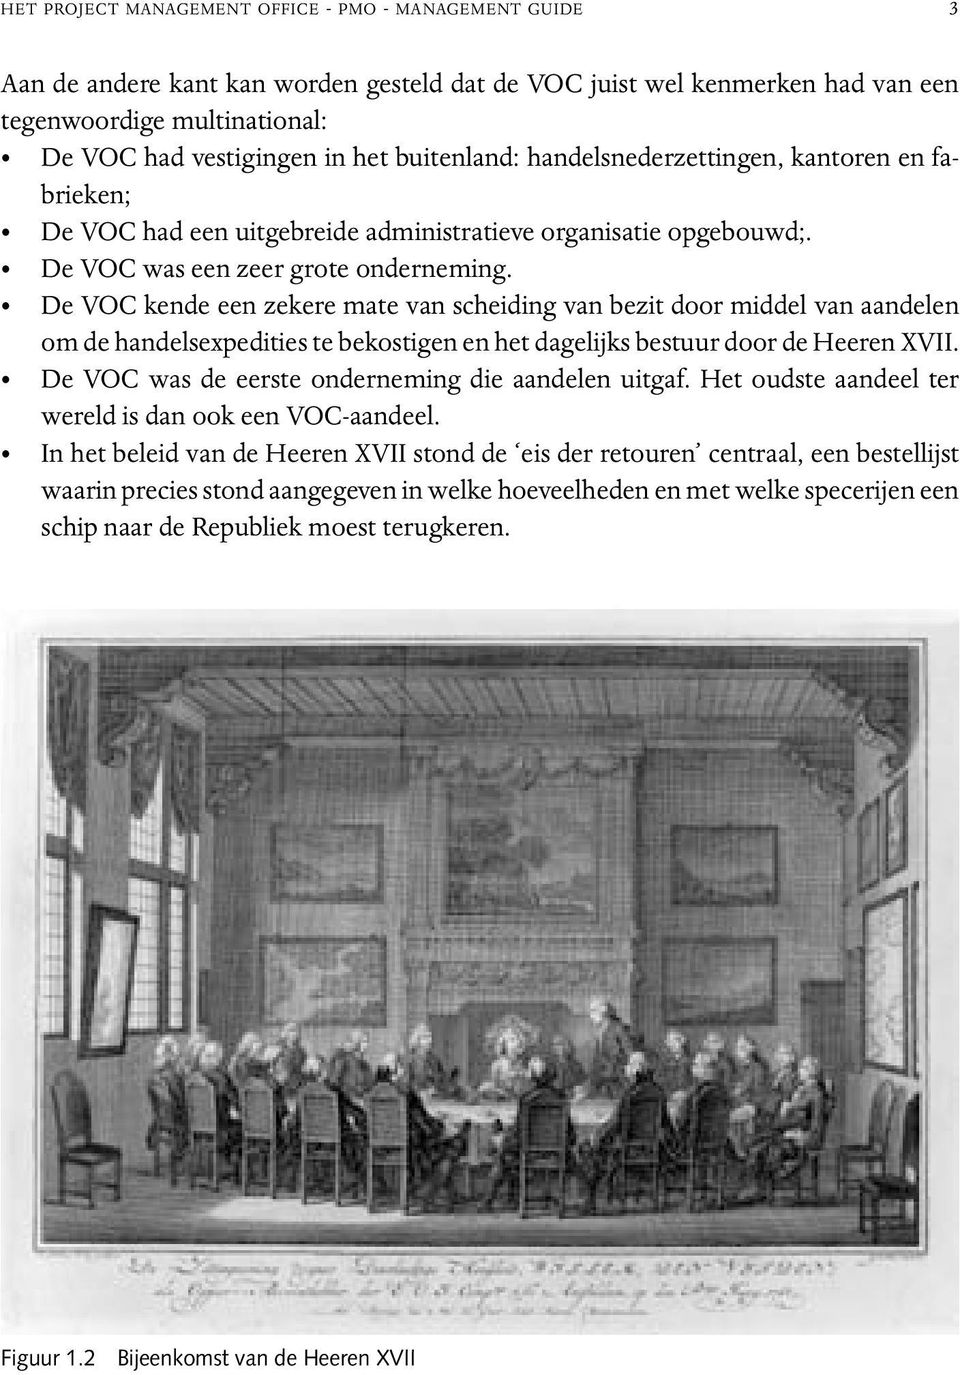 De VOC kende een zekere mate van scheiding van bezit door middel van aandelen om de handelsexpedities te bekostigen en het dagelijks bestuur door de Heeren XVII.